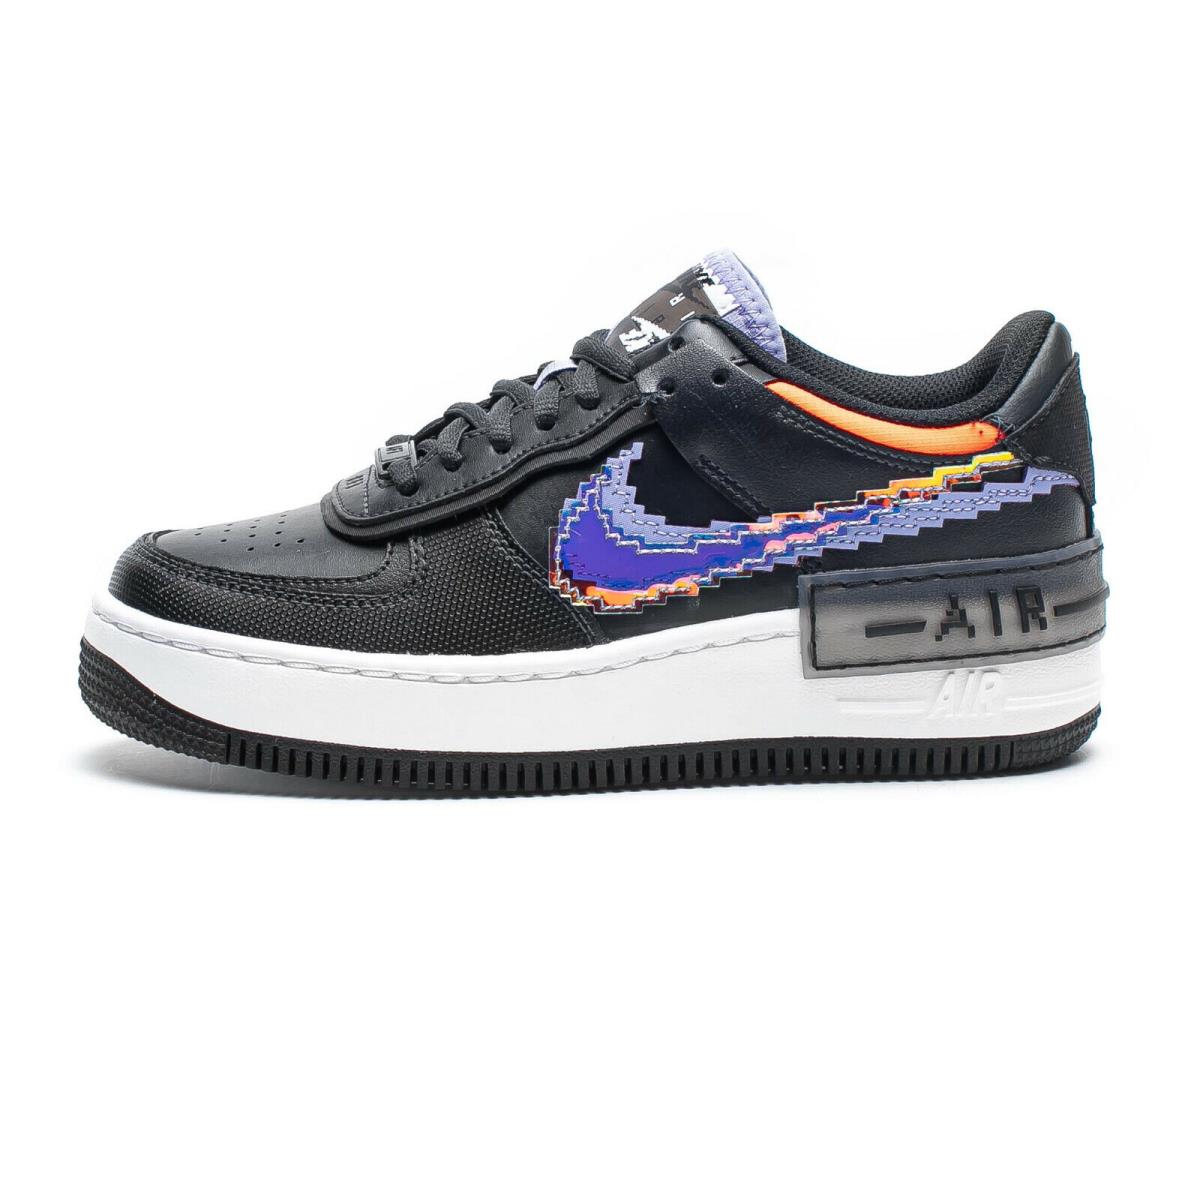 Nike AF1 Shadow SE Pixel Swoosh Size 8 Womens Off Noir Black Shoes CV8480 001